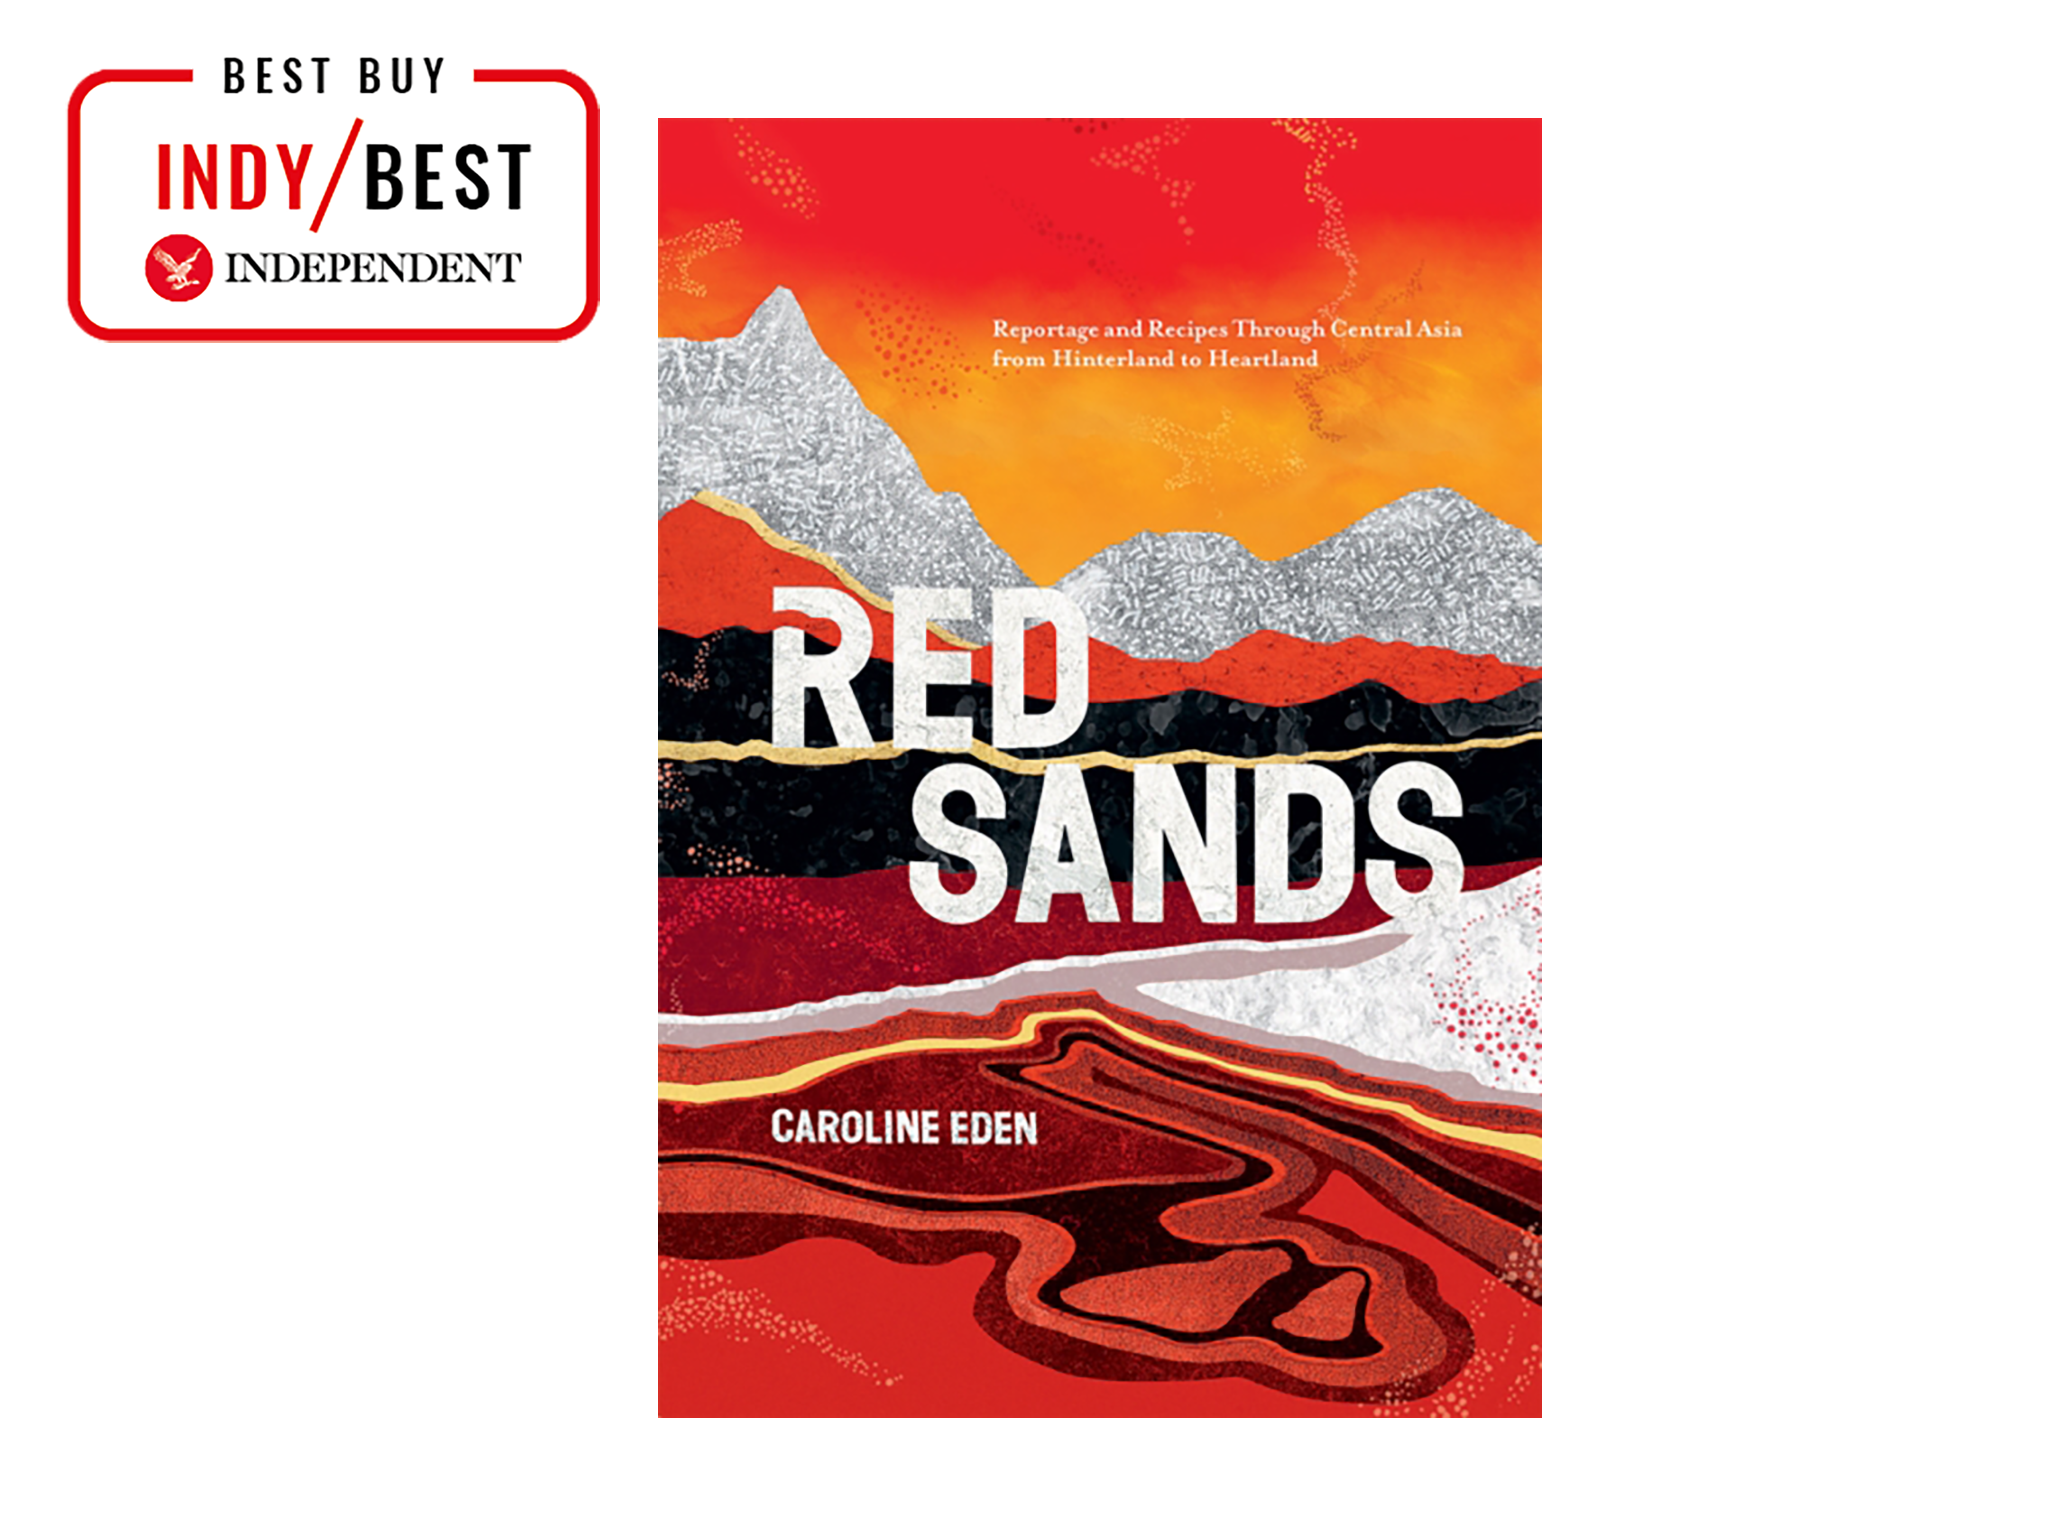 ‘Red Sands’ by Caroline Eden, published by Quadrille